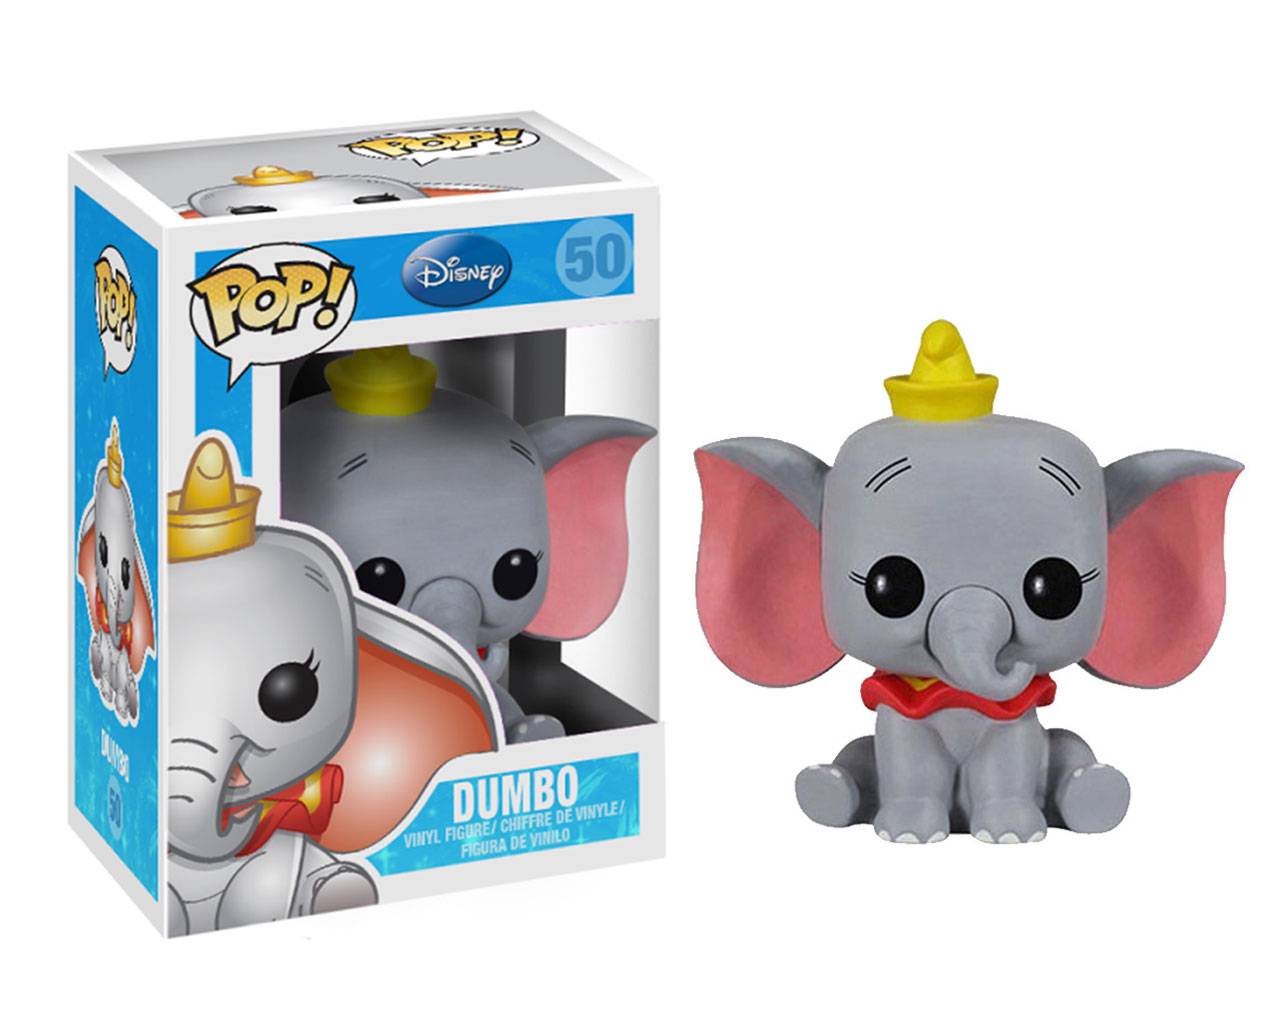 Dumbo (Seated) Pop! Vinyl